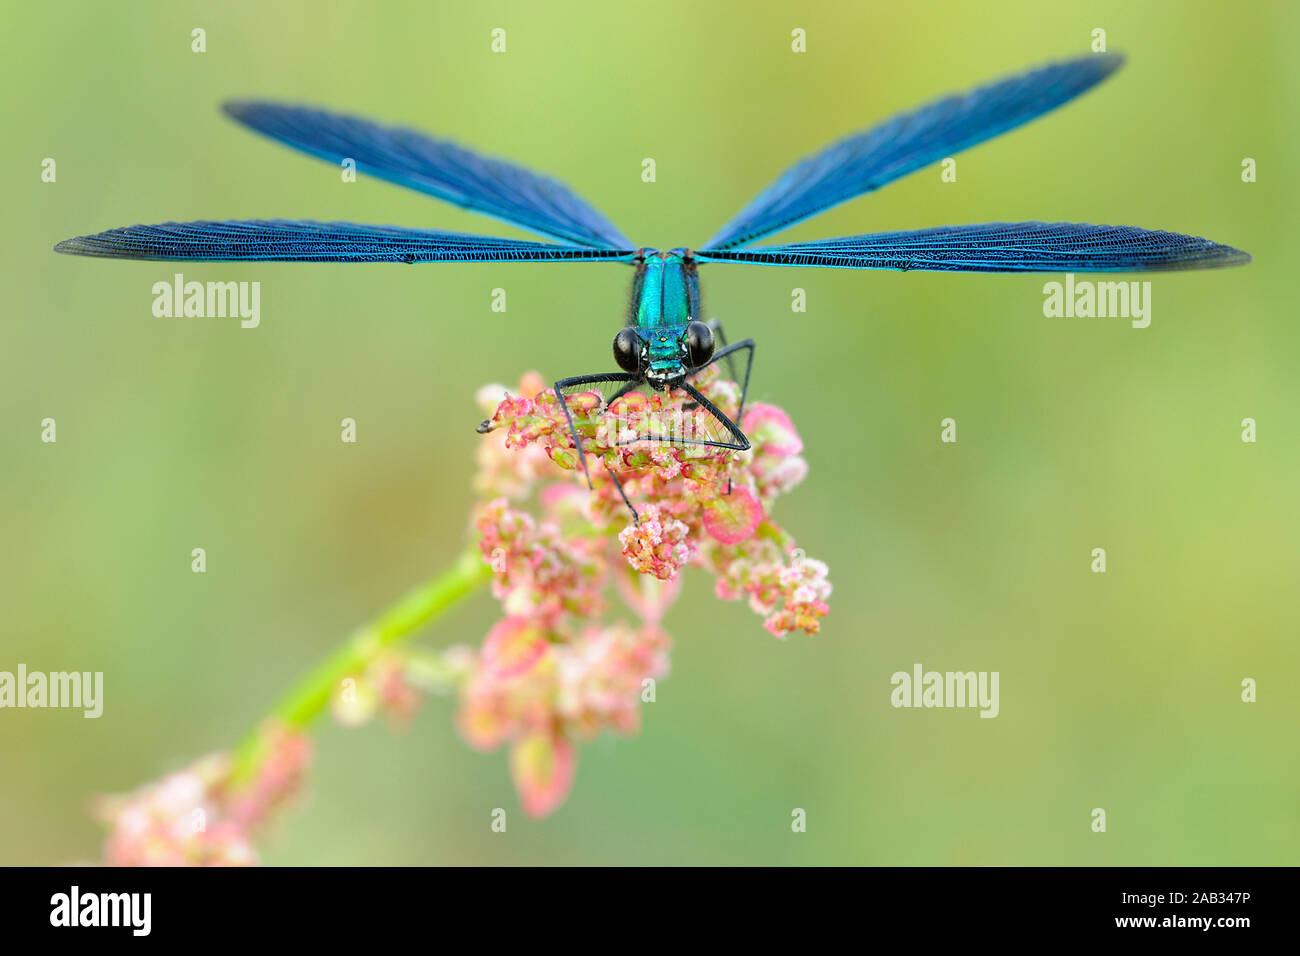 Blaufluegel Prachtlibelle, Calopteryx virgo, sitzt auf Pflanze Stock Photo